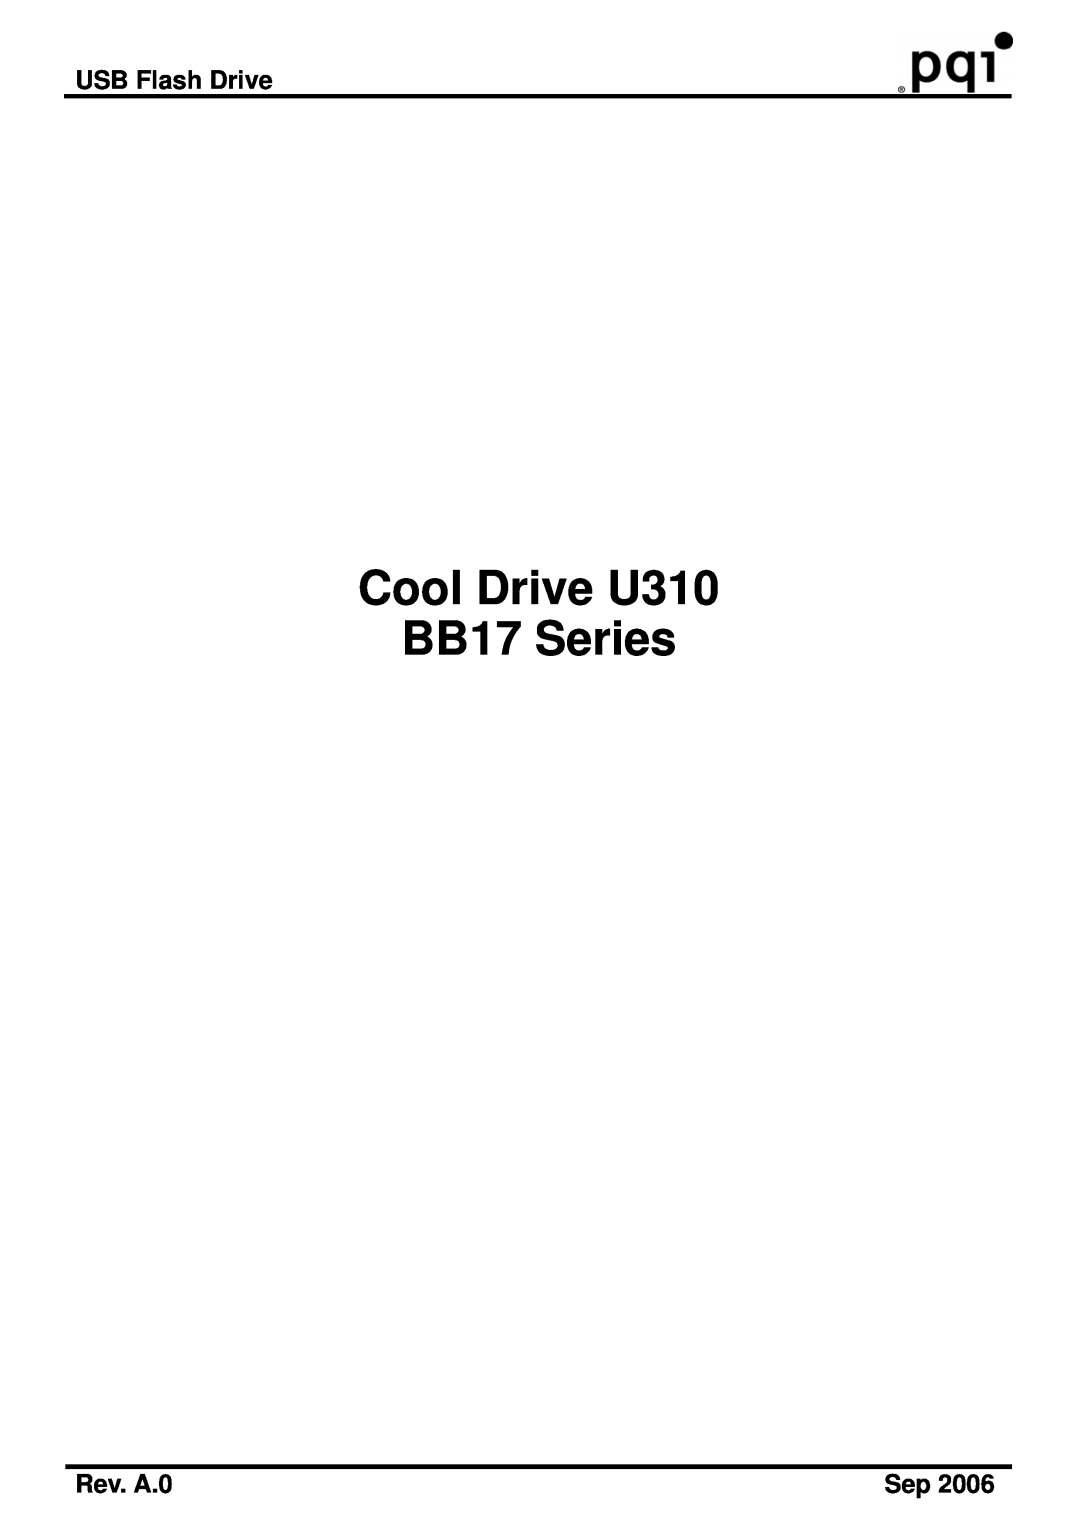 PQI manual USB Flash Drive, Rev. A.0, Cool Drive U310 BB17 Series 